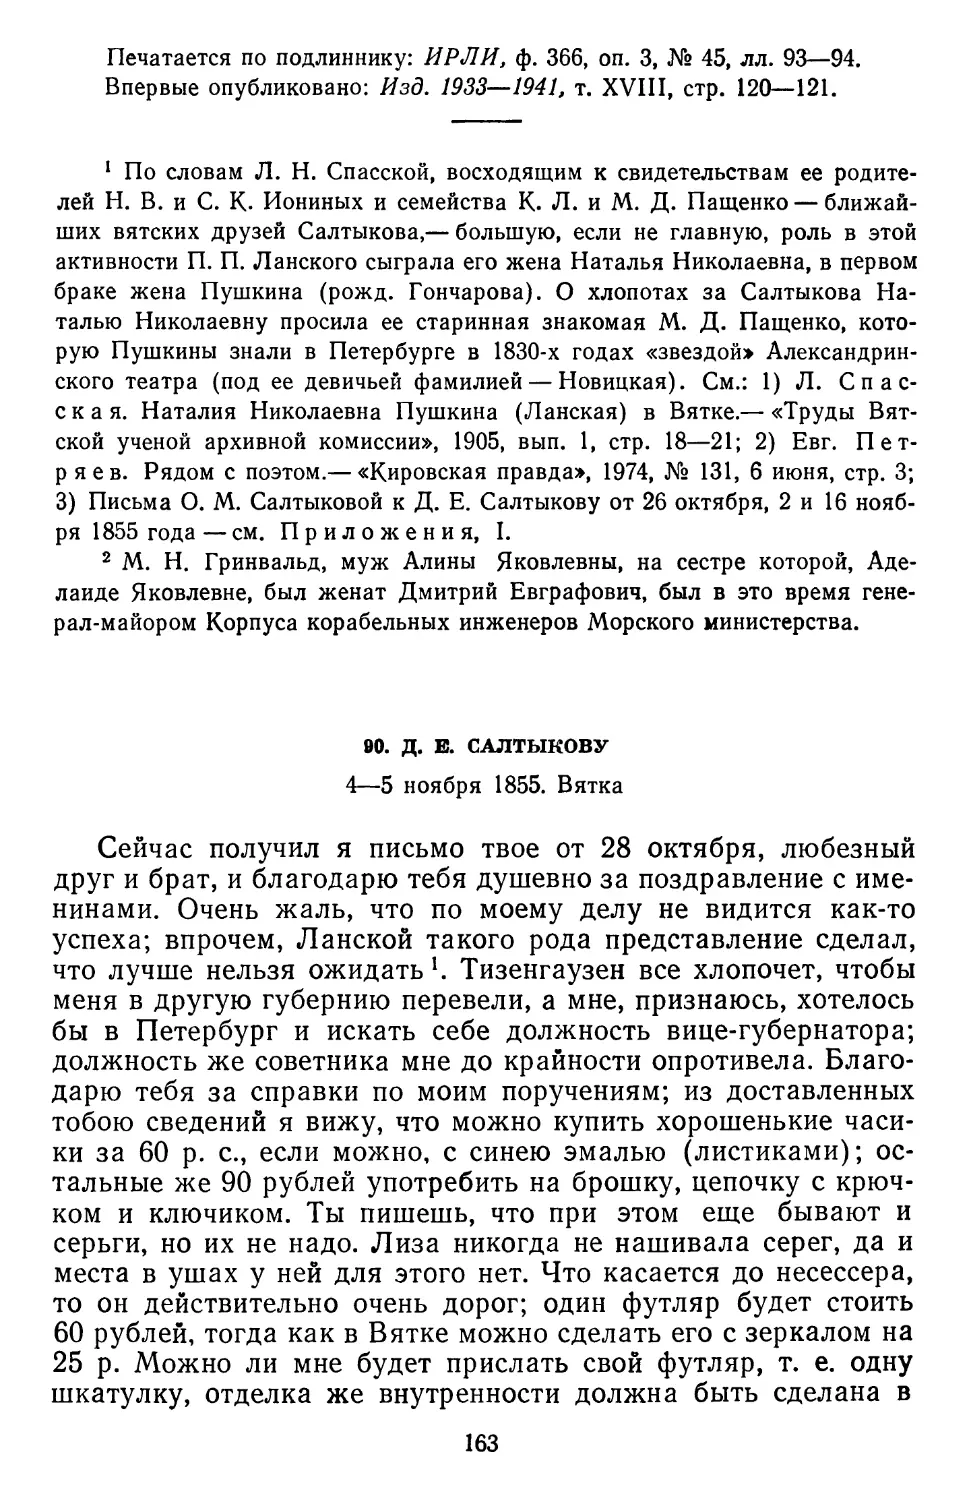 90.Д. Е. Салтыкову. 4—5 ноября 1855. Вятка